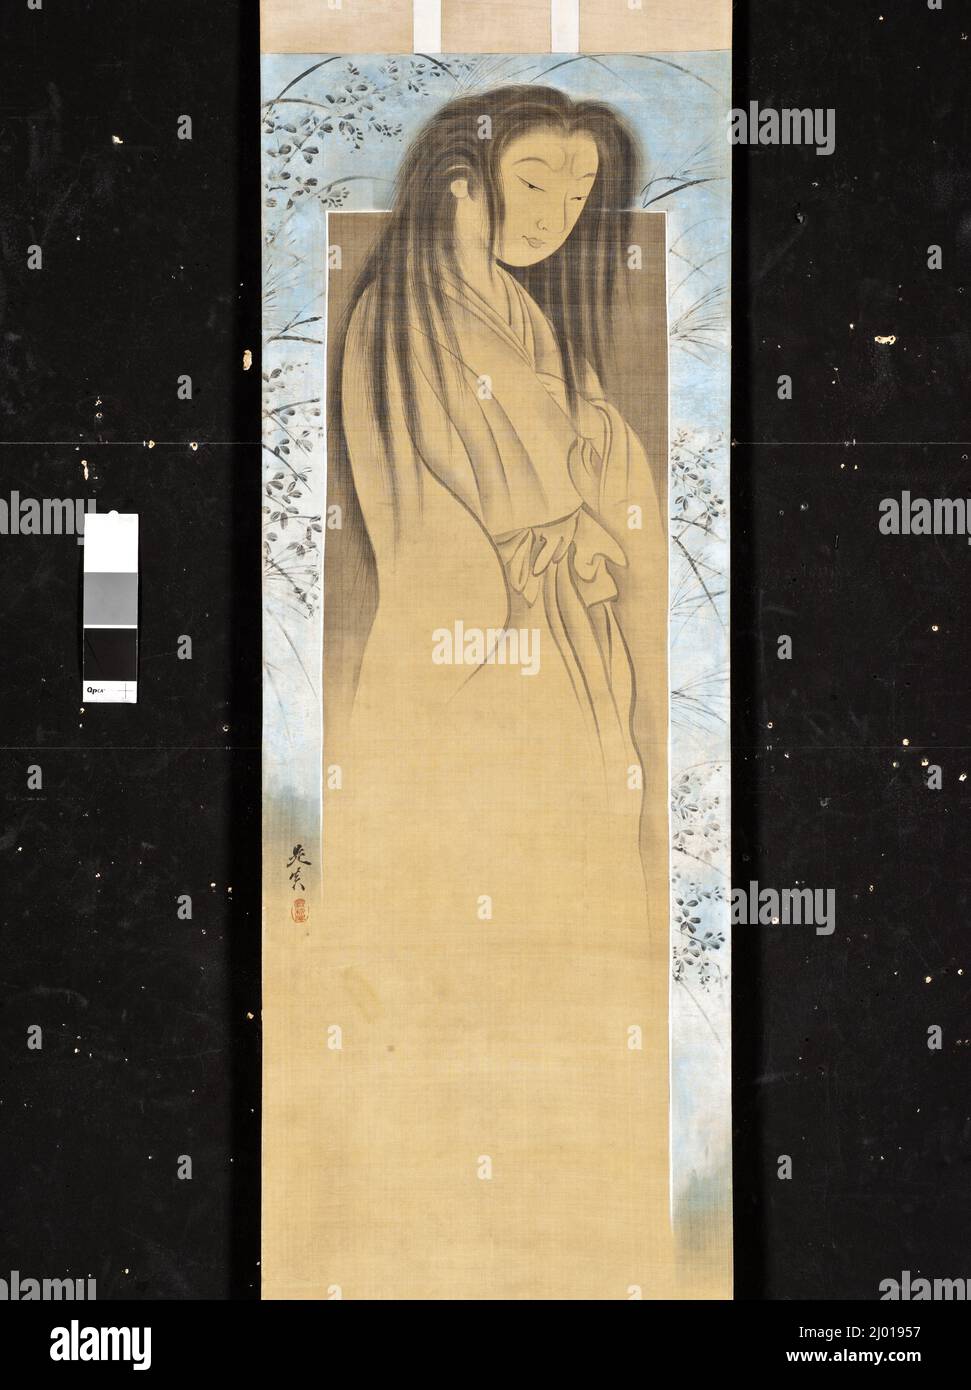 Fantasma. Shibata Zeshin (Giappone, 1807-1891). Giappone, 19th secolo. Quadri; scorre. Rotolo appeso; inchiostro e argento su seta Foto Stock